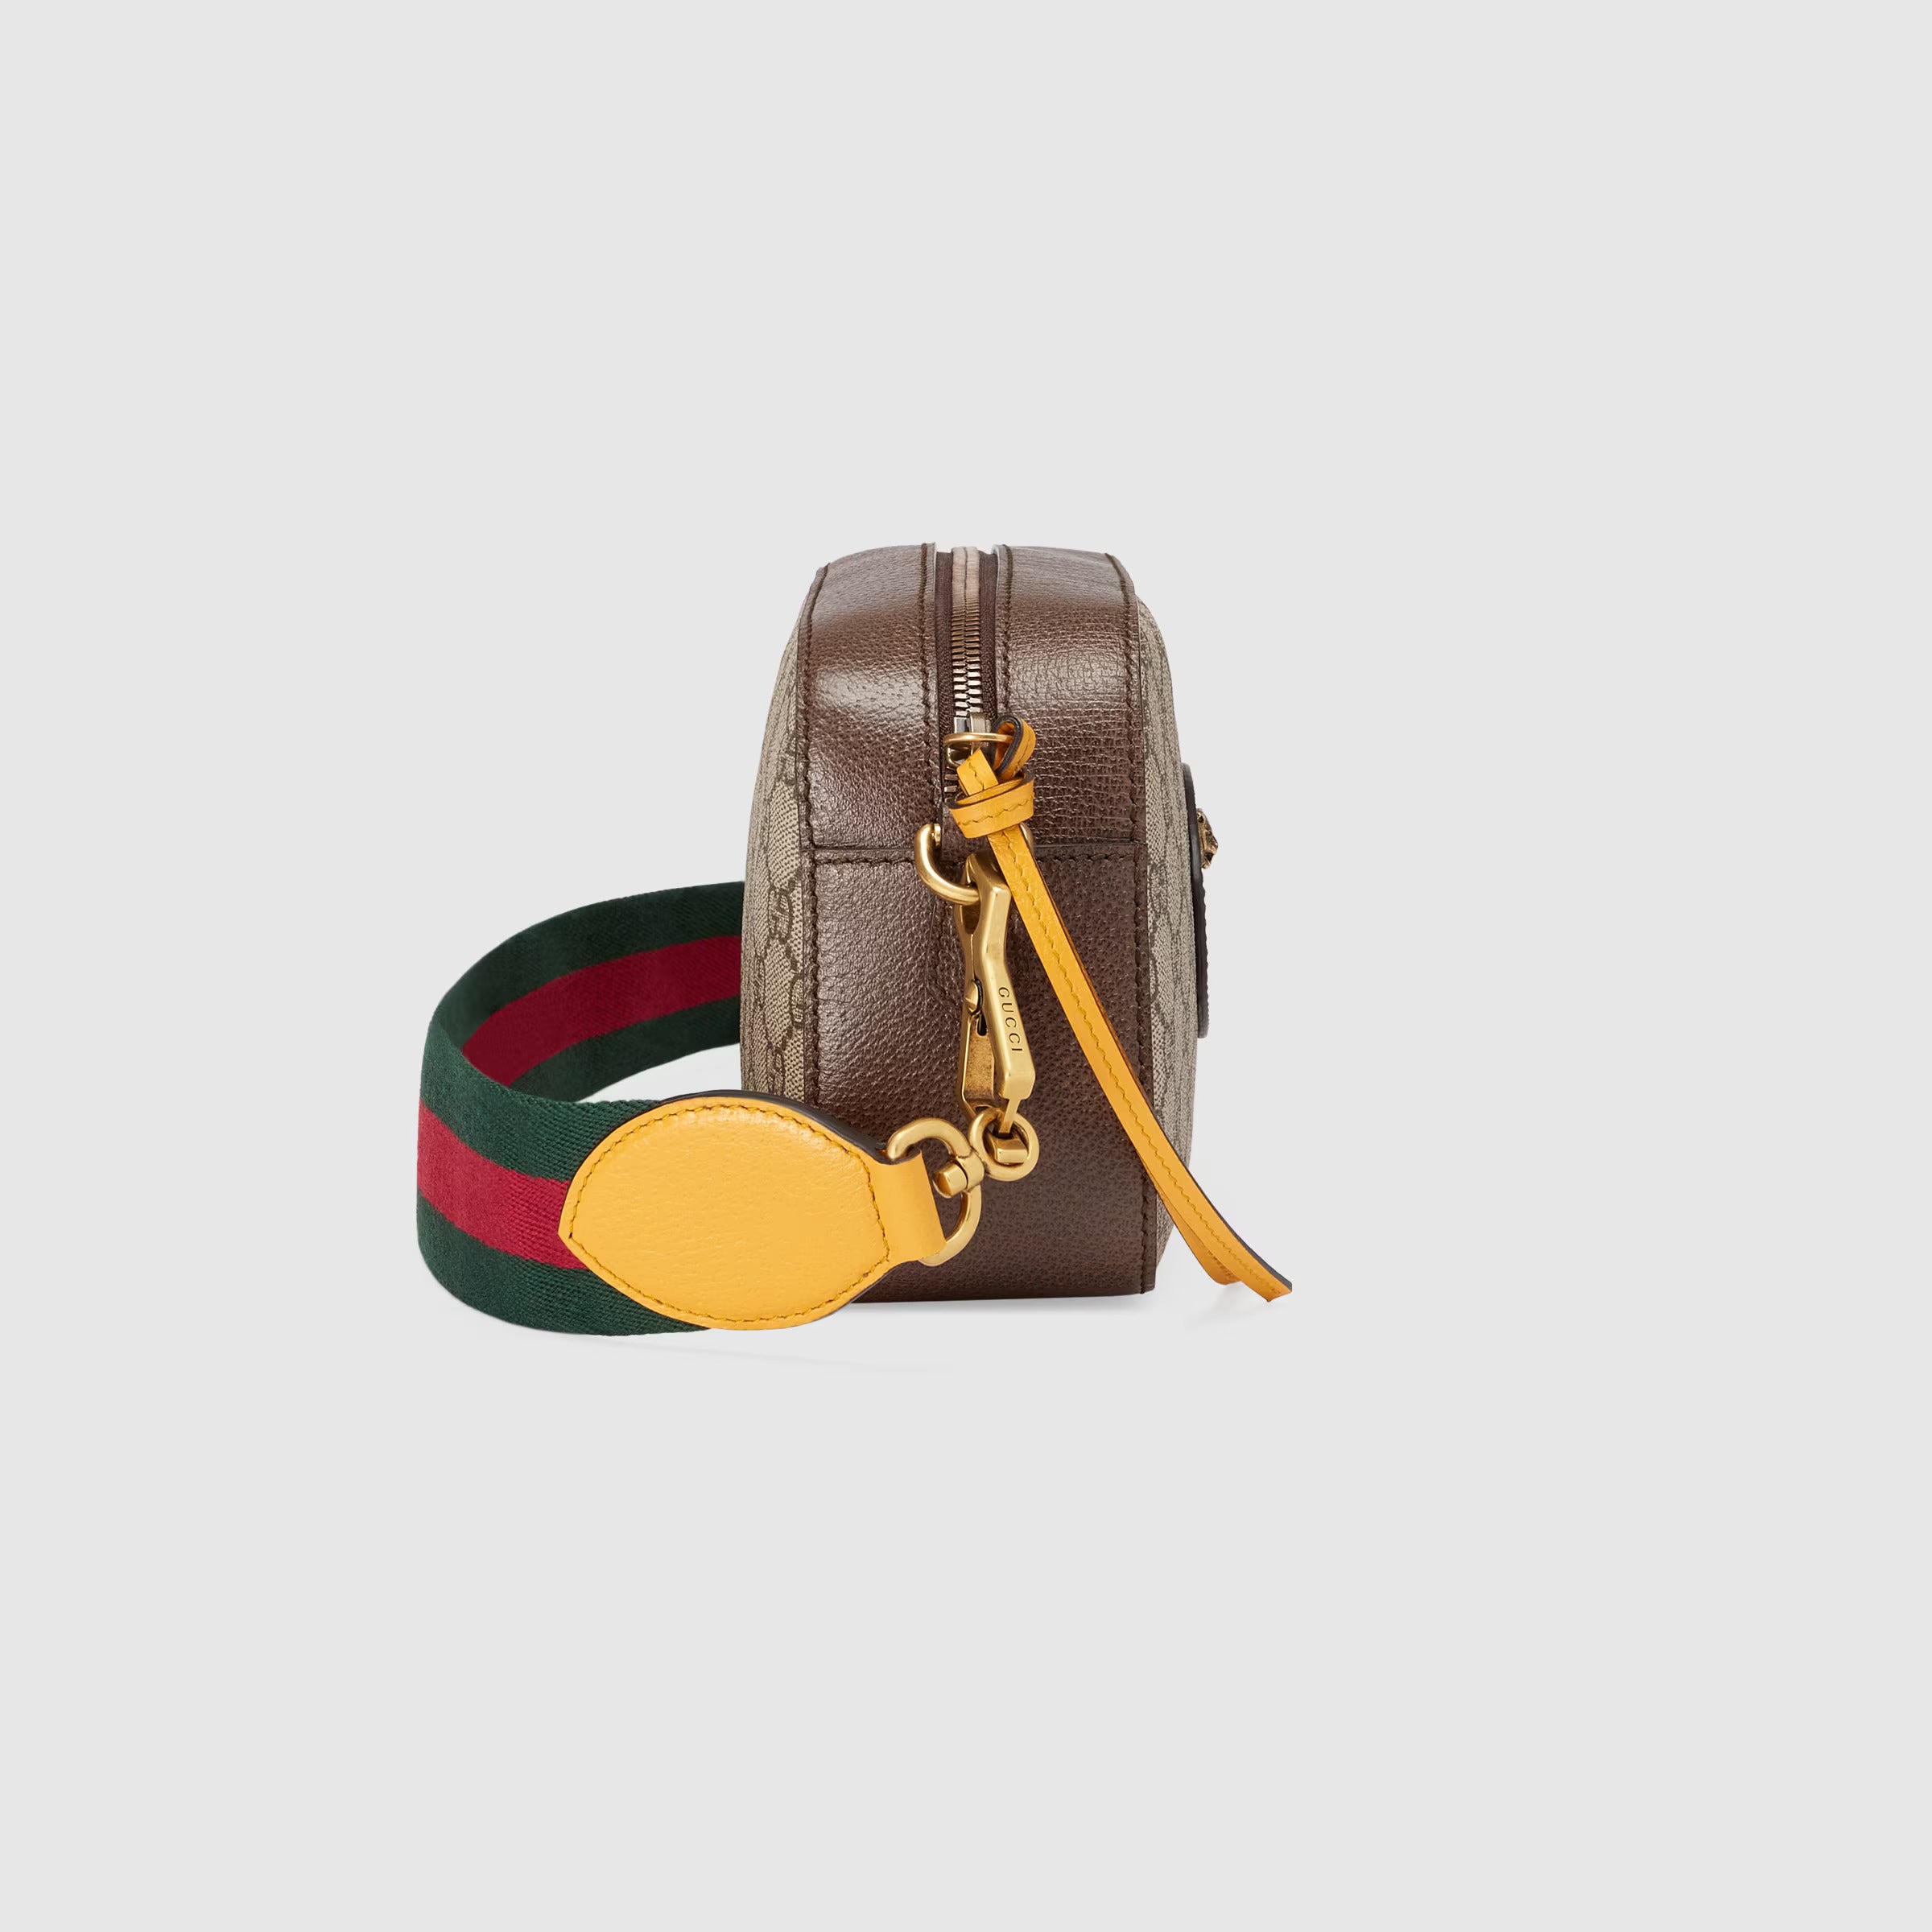 Gucci Neo Vintage GG Supreme Messenger Bag (Beige & Ebony)